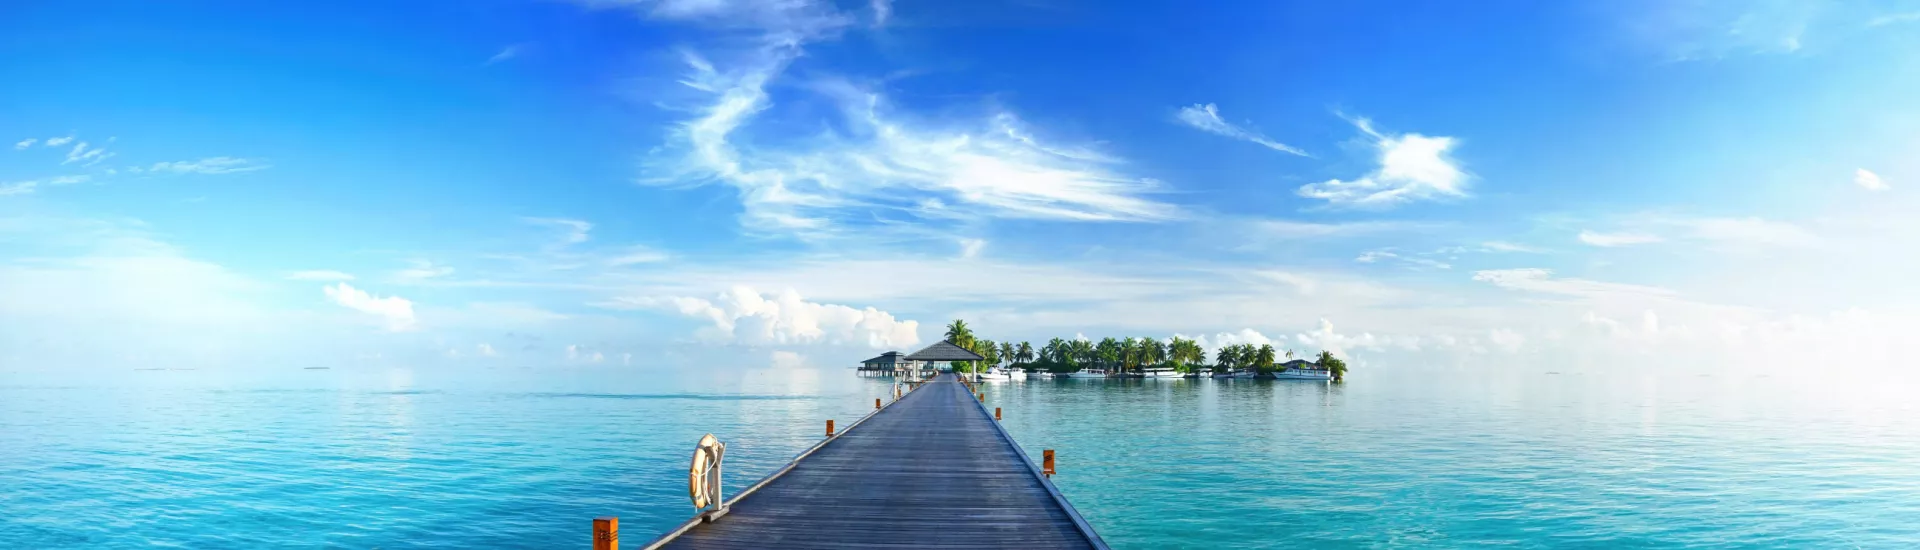 Träume auf den Malediven: Ein Inselpier in einem tropischen Paradies